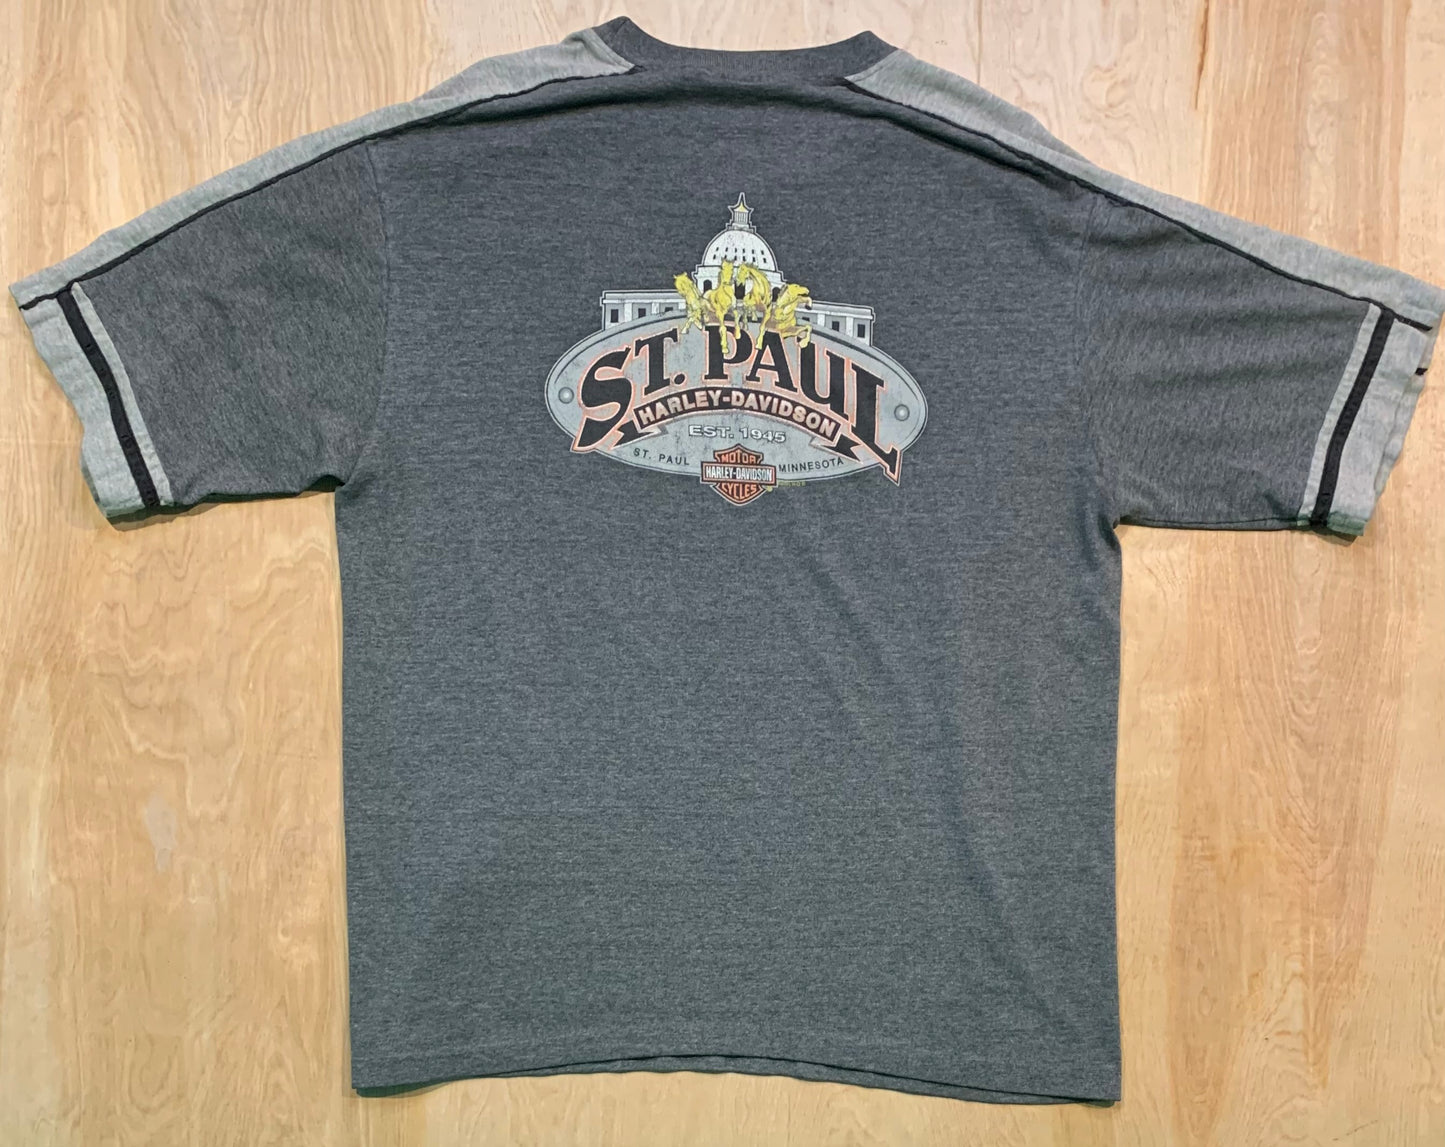 Harley Davidson 2001 St Paul, Minnesota T-Shirt